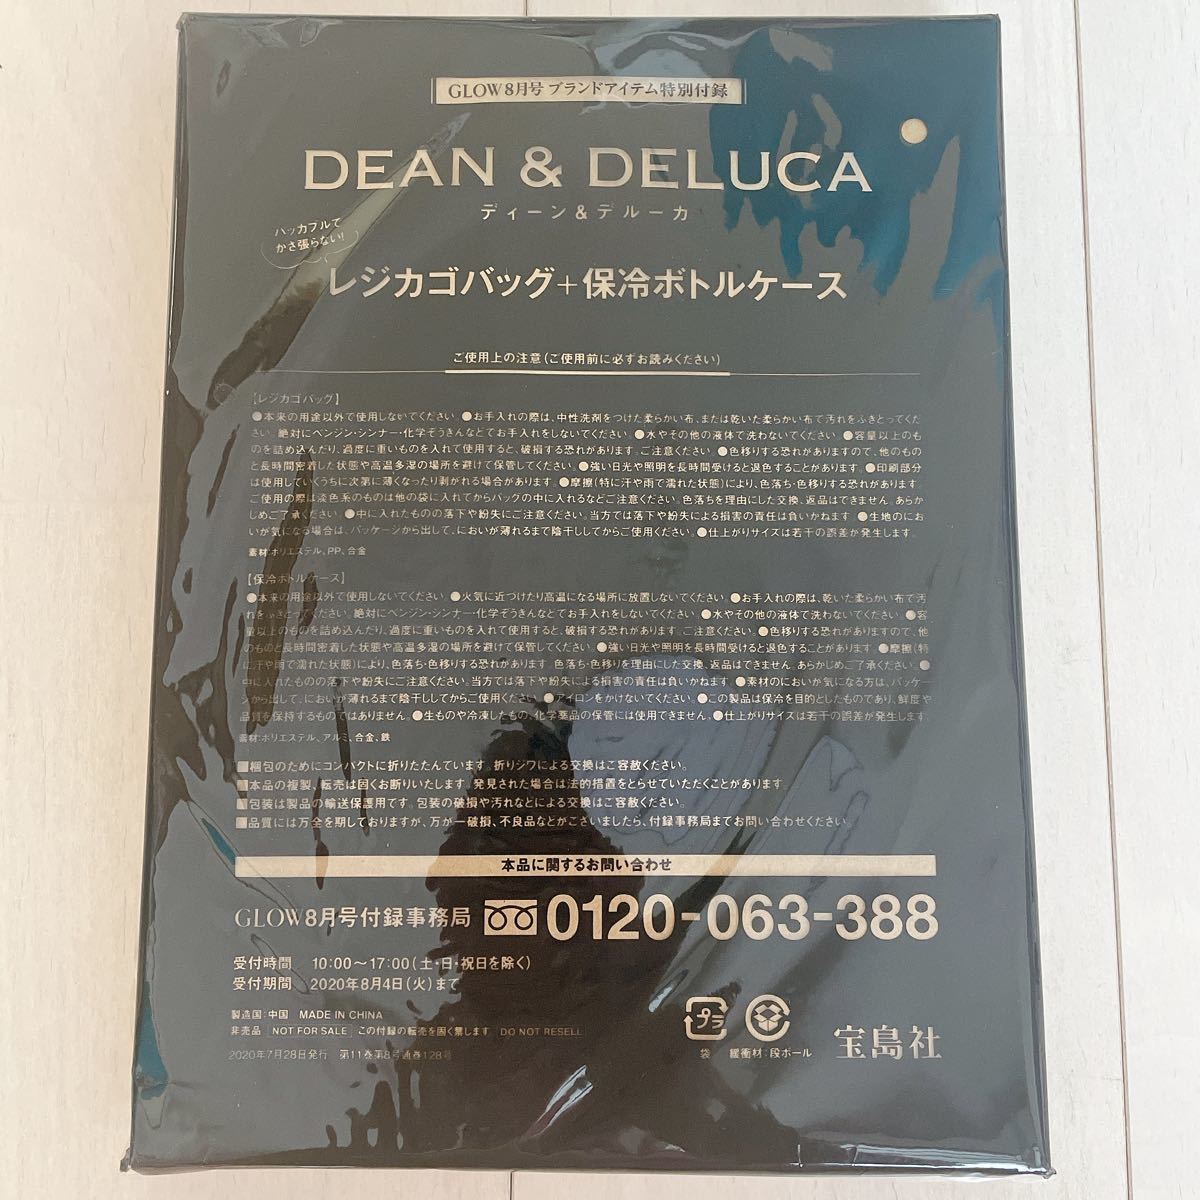 新品 DEAN&DELUCA ディーンアンドデルーカ エコバッグ レジカゴバッグ 雑誌GLOW8月号 グロウ グロー 2020 黒